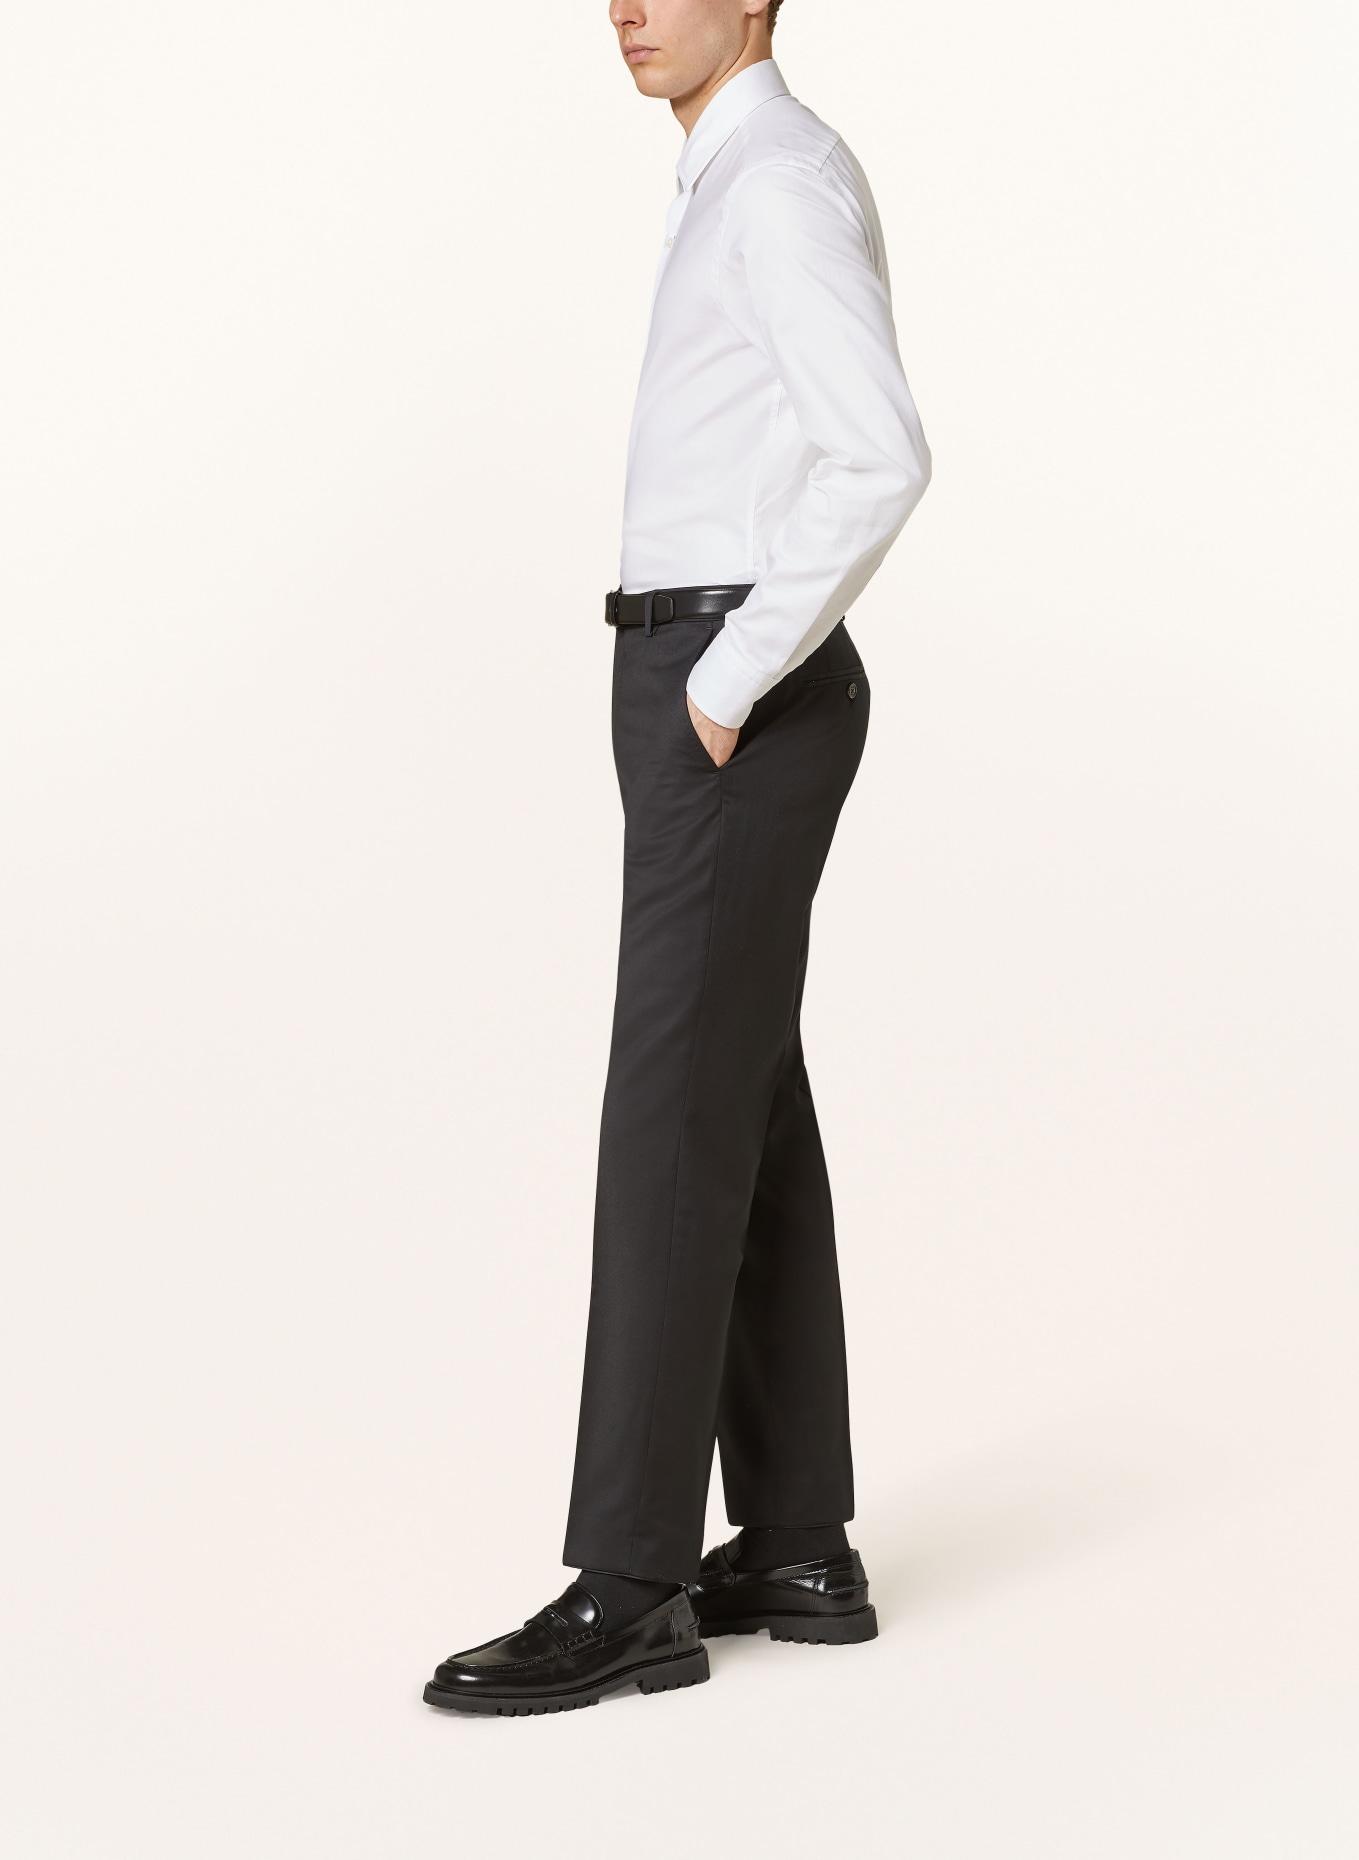 JOOP! Anzughose Slim Fit, Farbe: 001 Black                      001 (Bild 5)